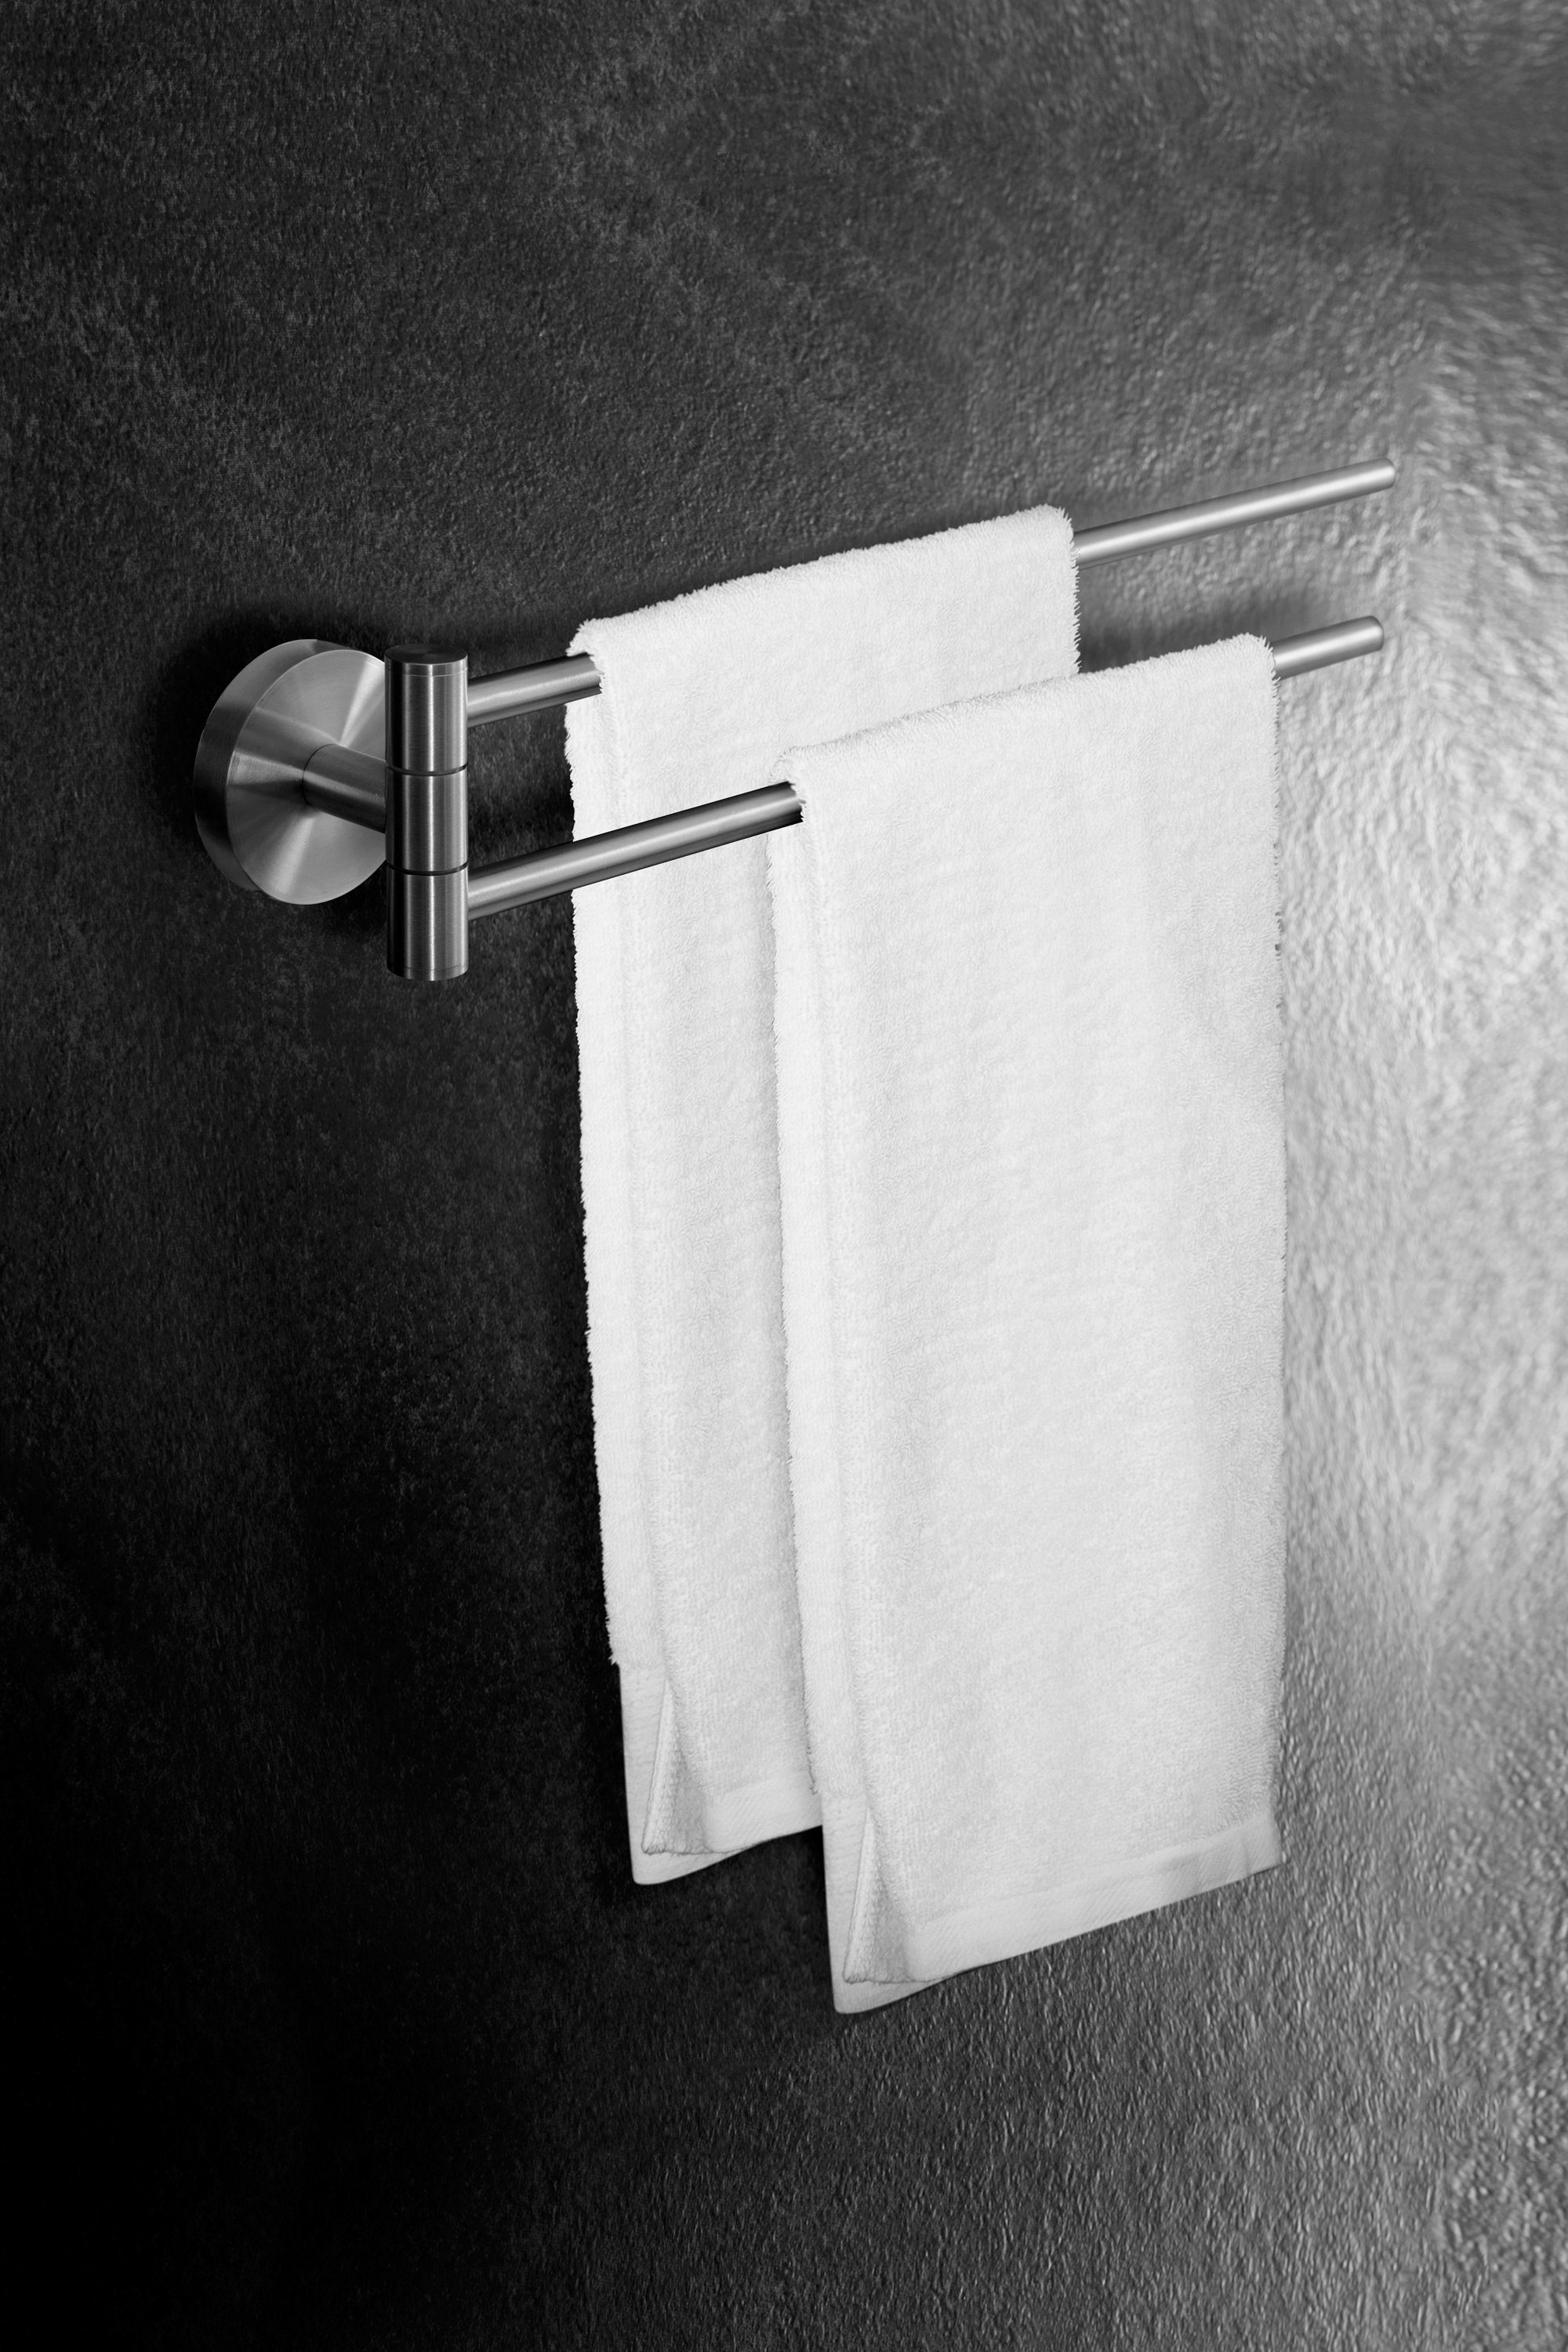 Bad Handtuchhalter - WC, Montage Handtuchhalter Badetuchhalter Edelstahl aus Ambrosya leichte Handtuch Halter